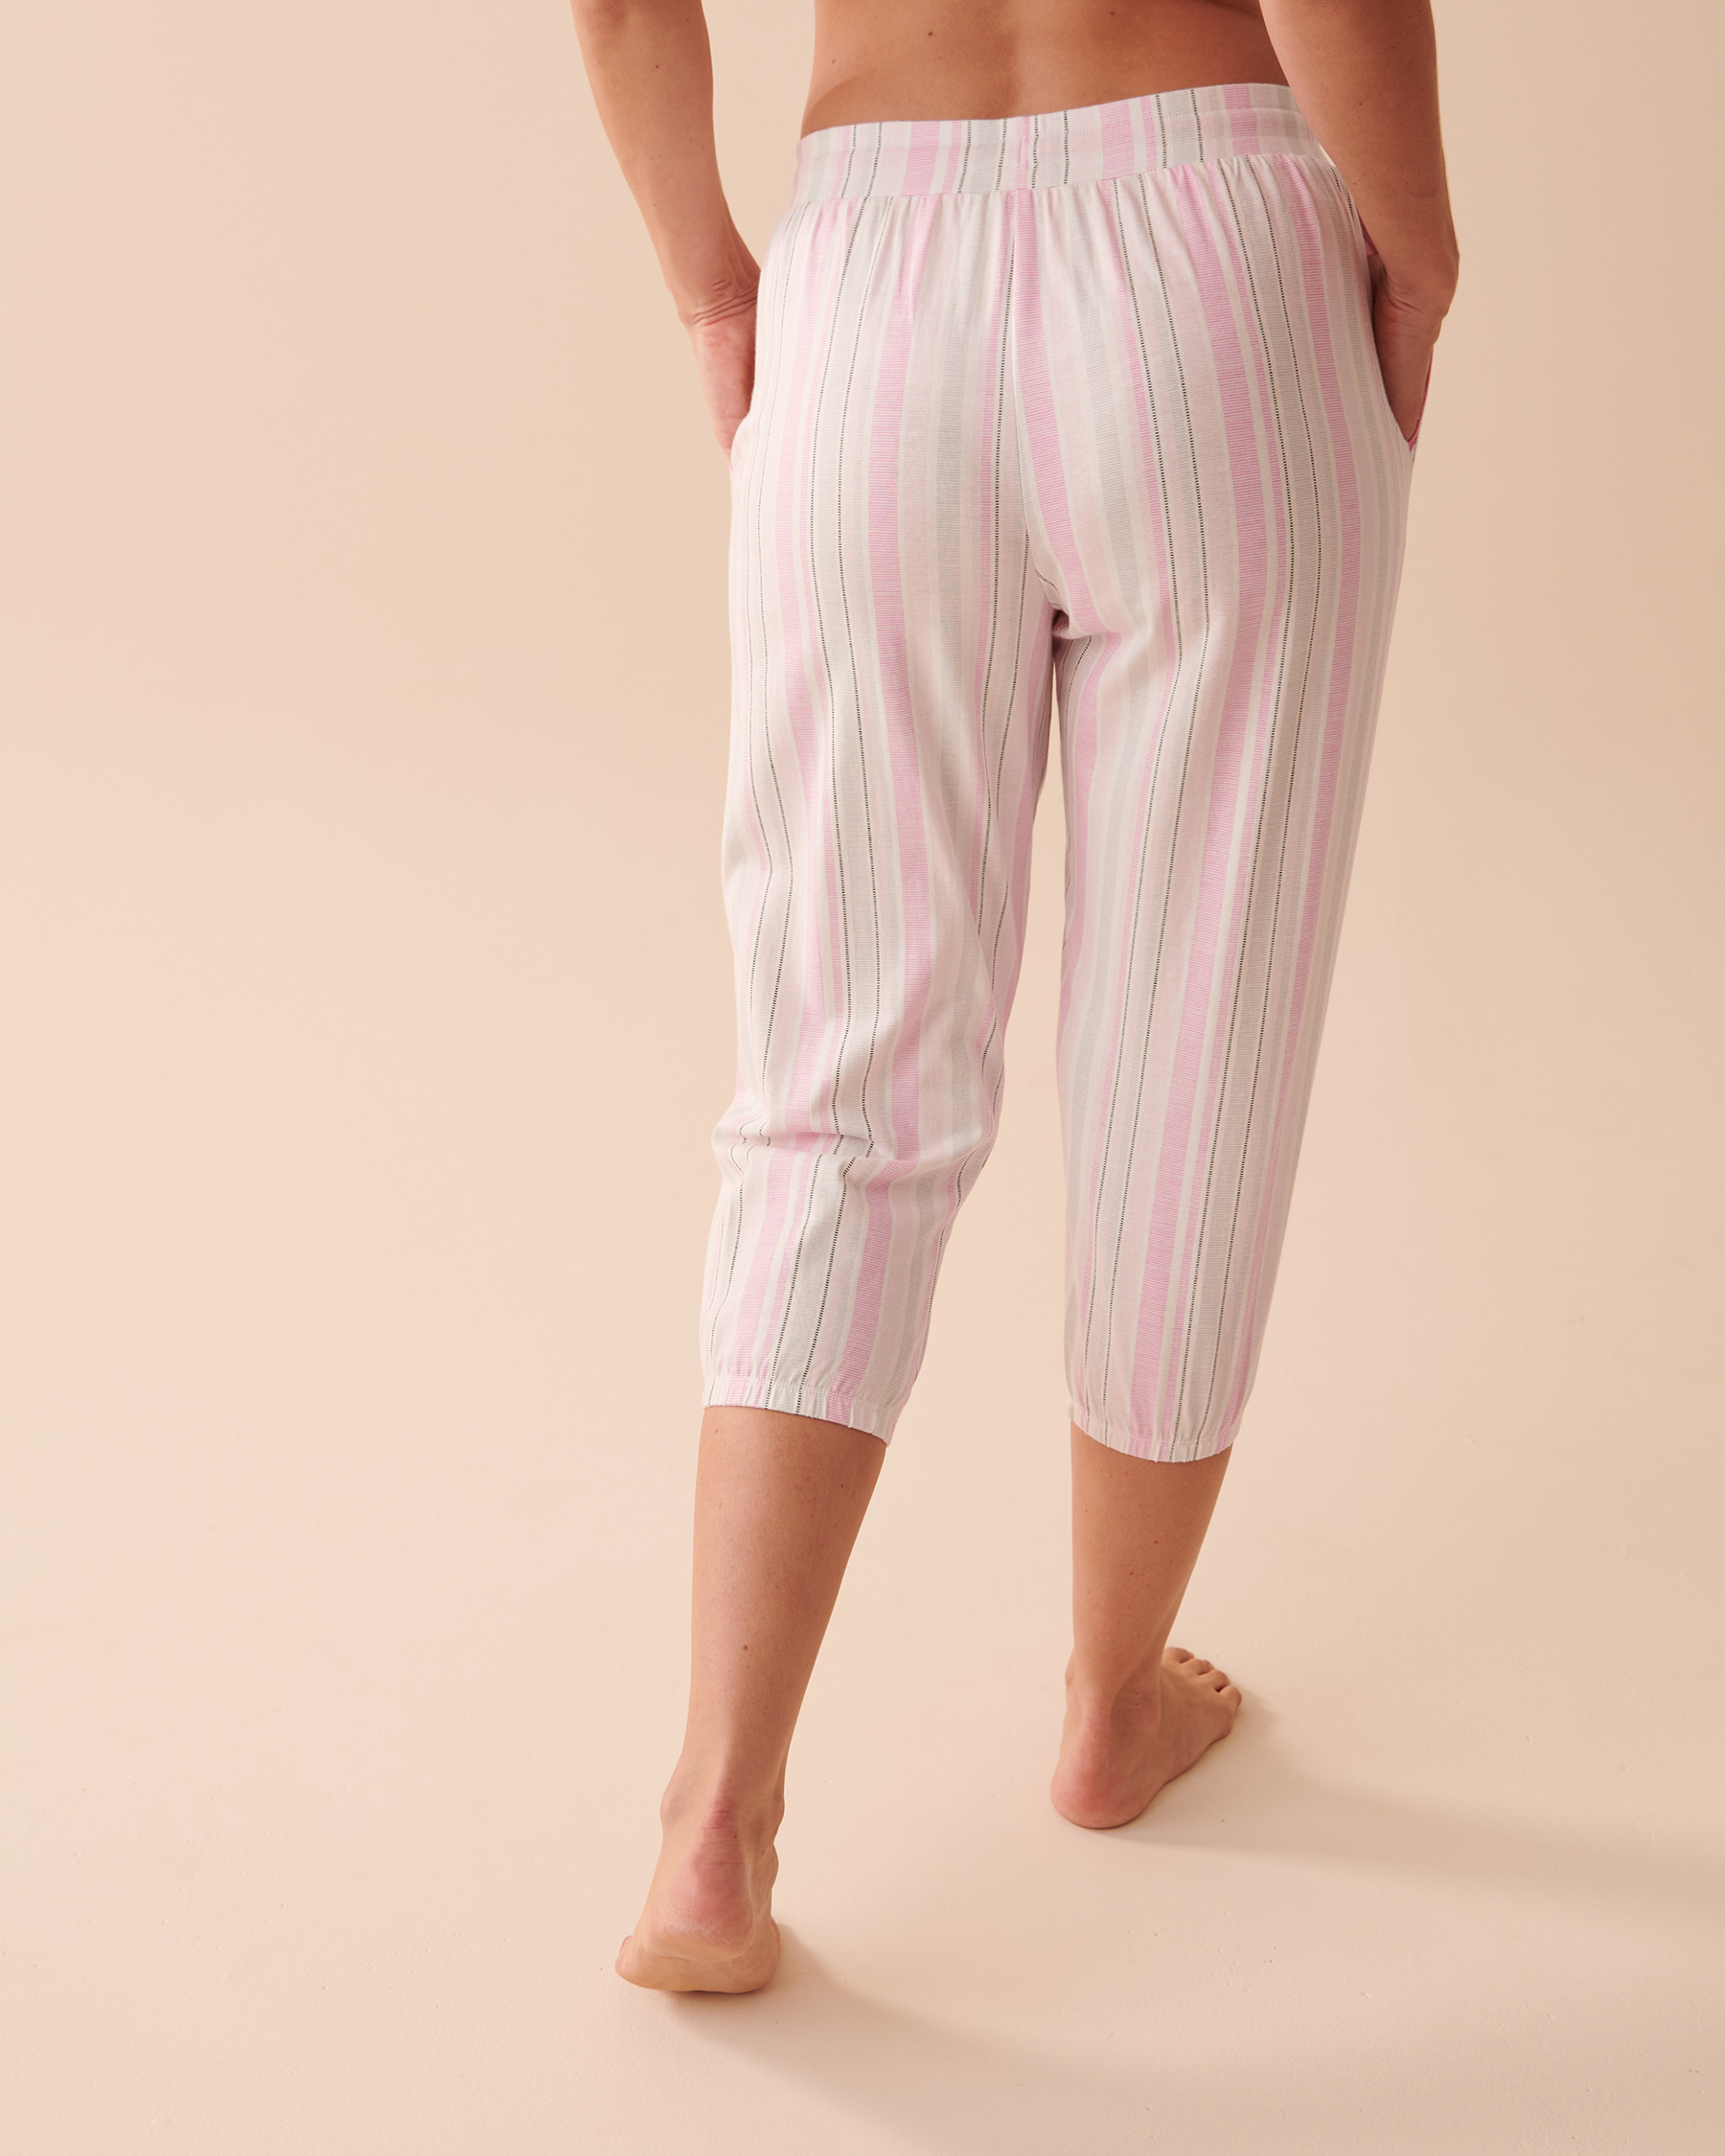 Striped Cotton Pajama Pants - Pink Stripes